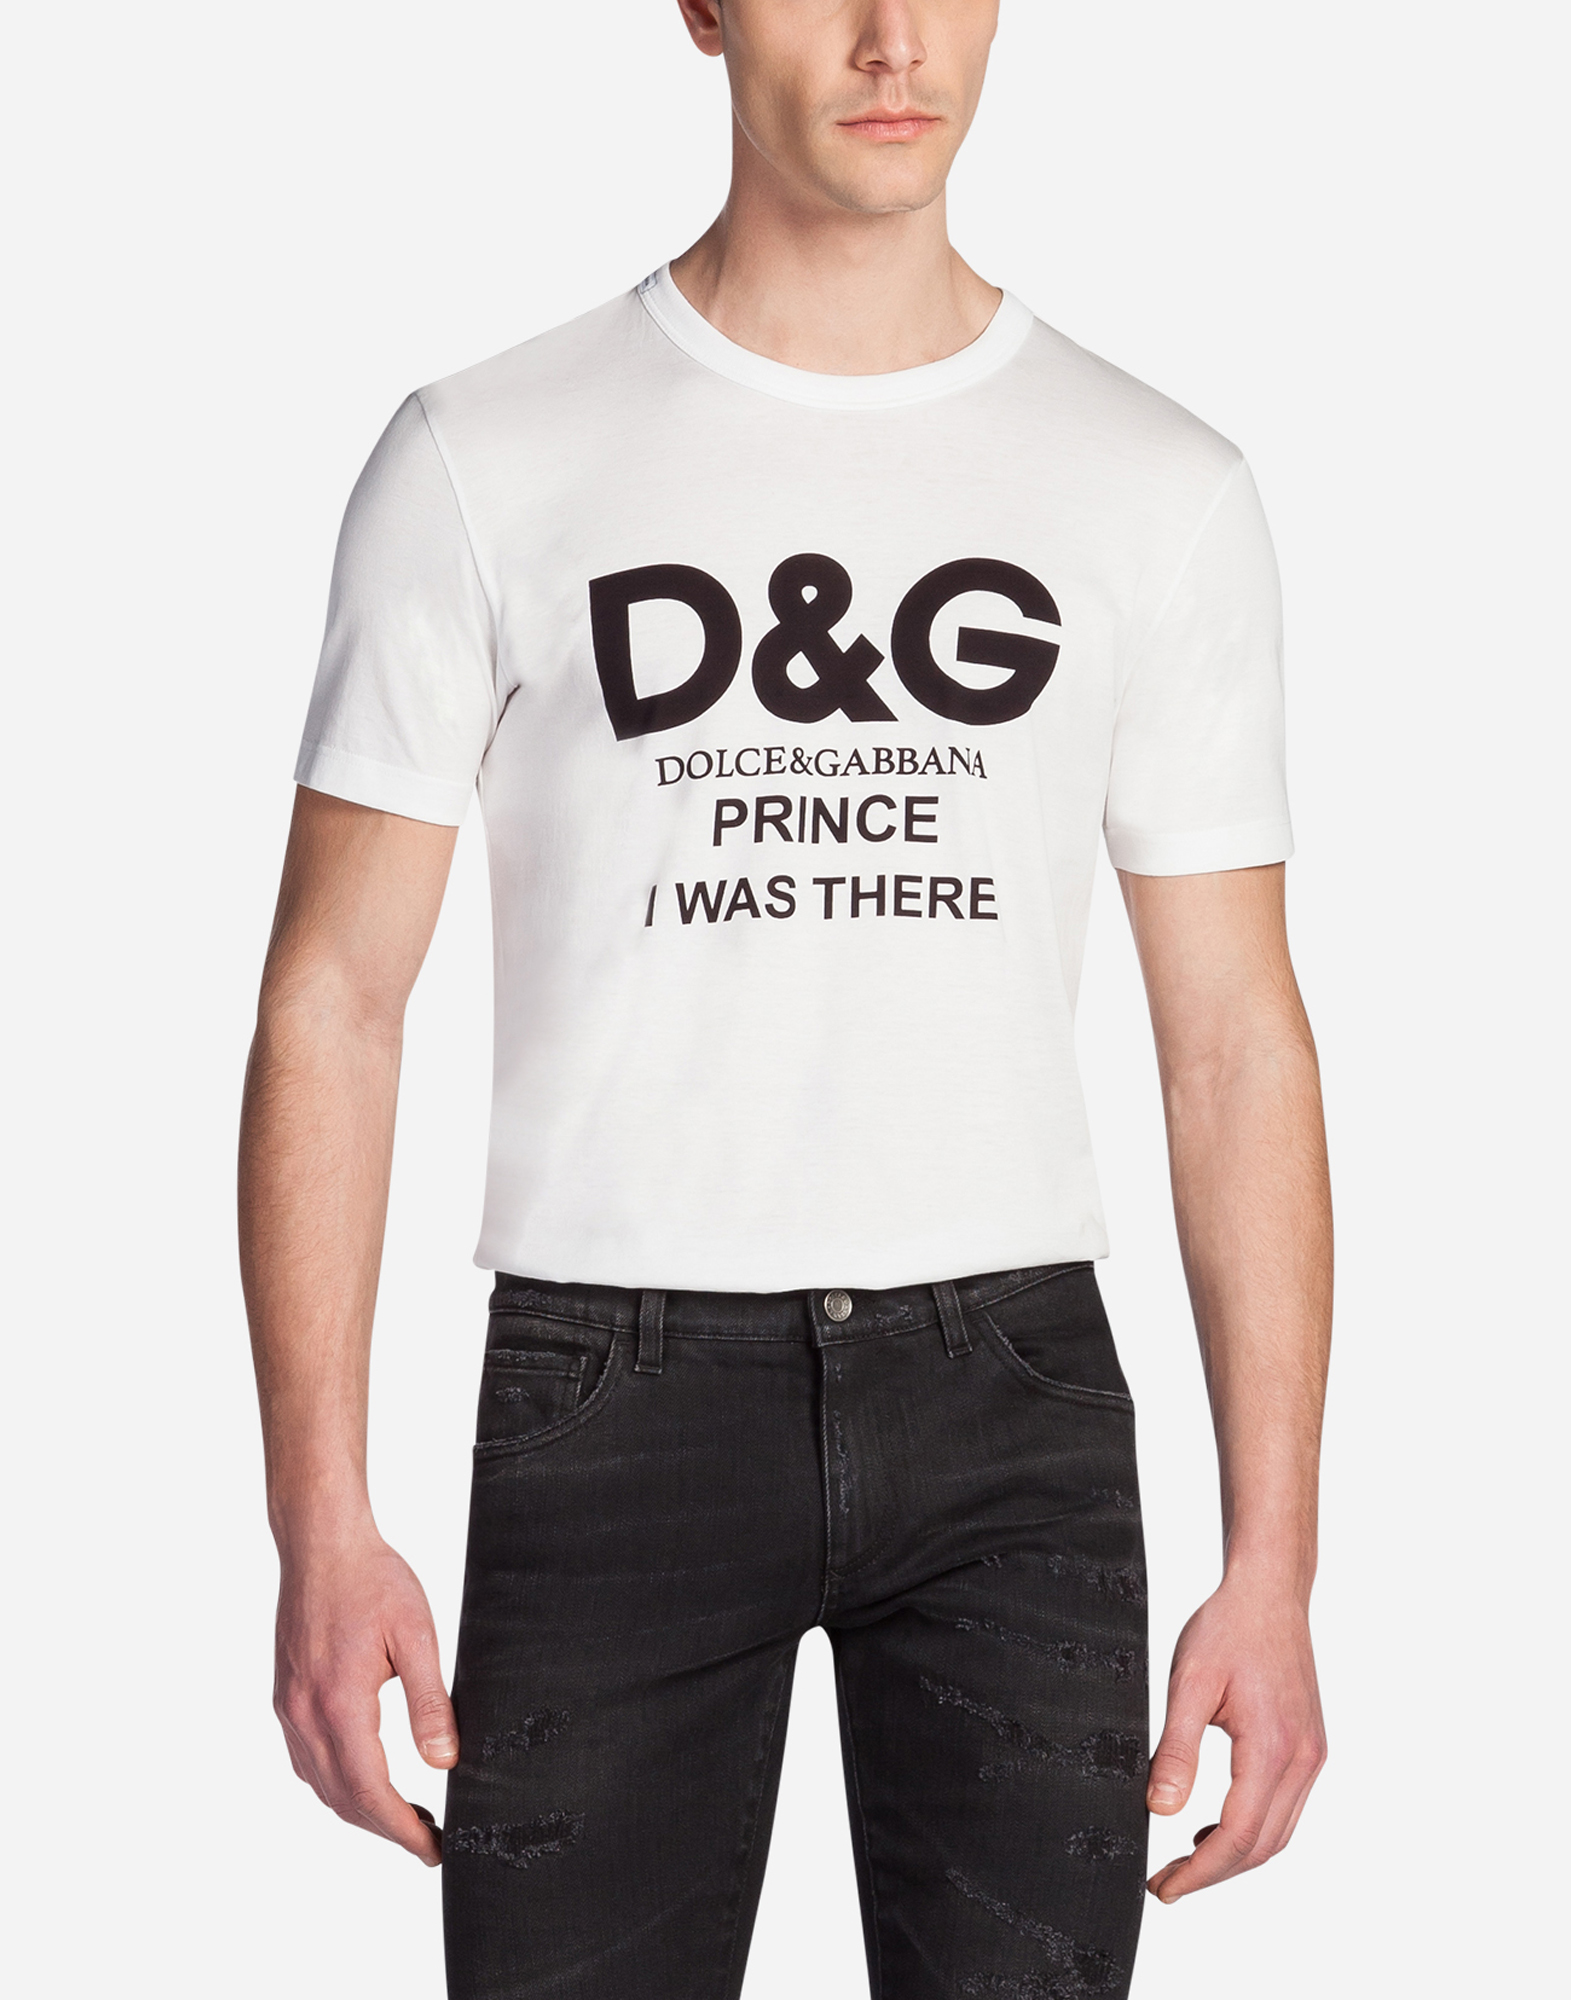 d&g shirts